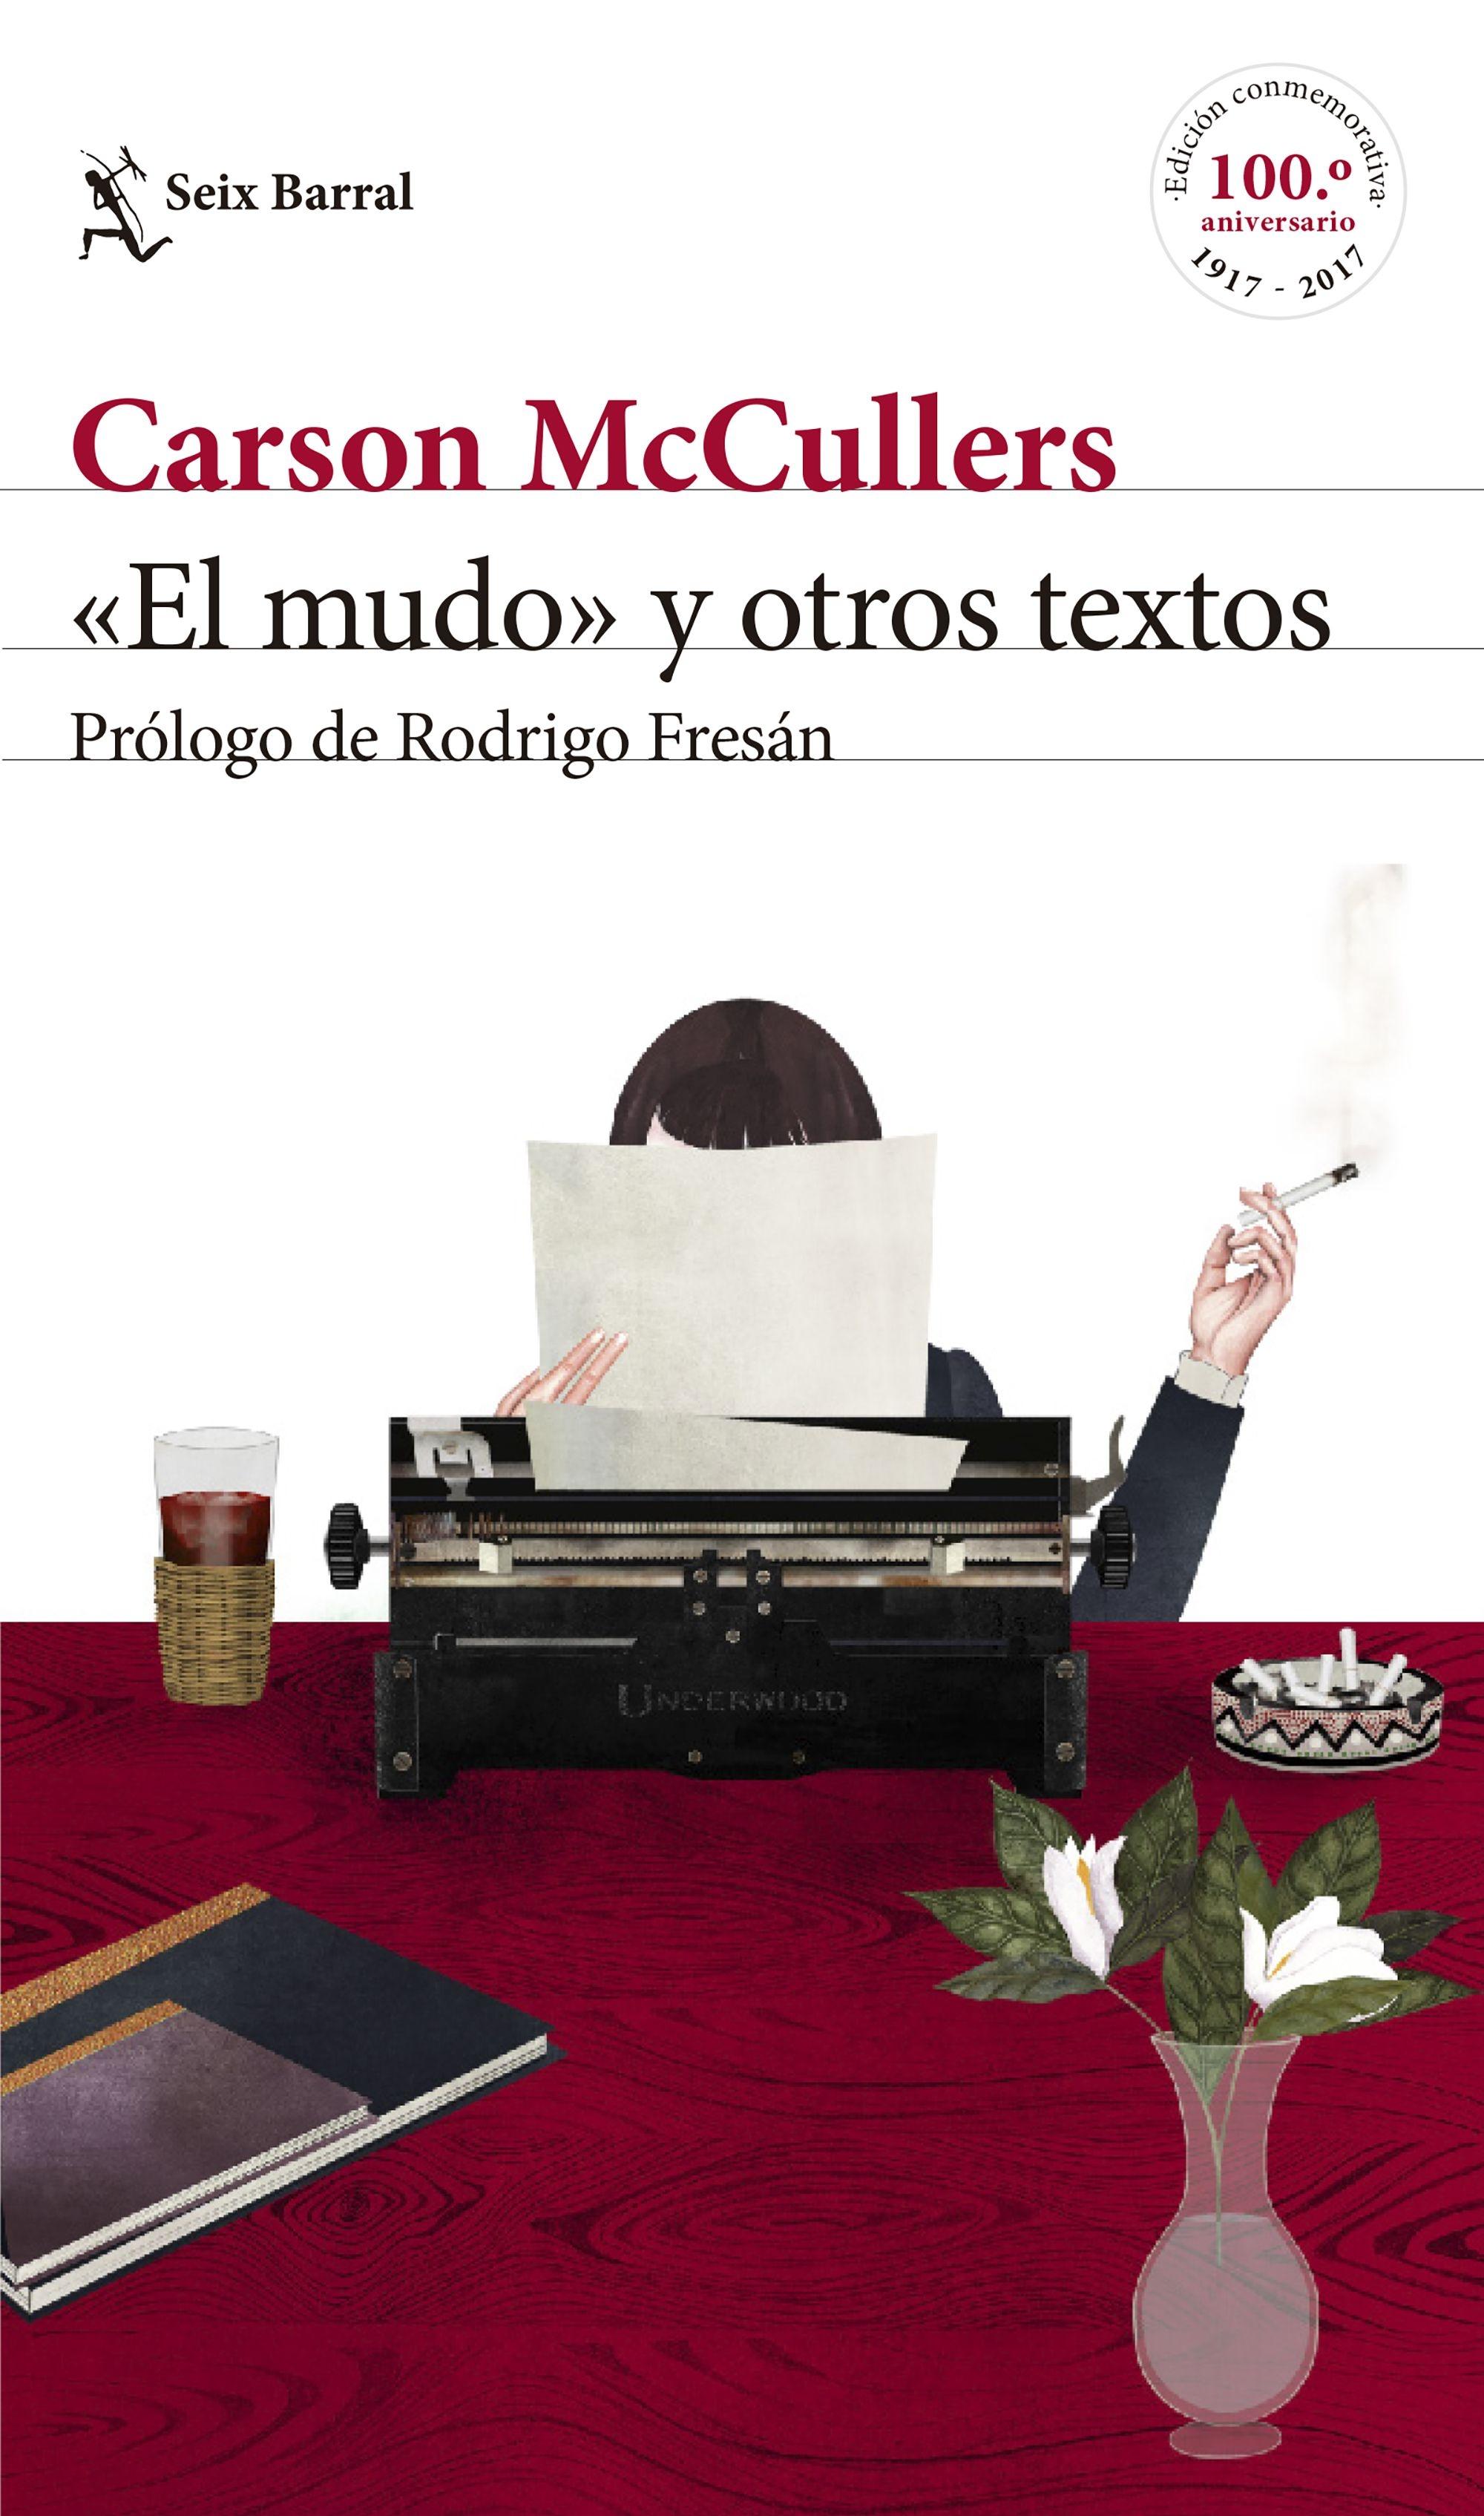 El mudo  y otros textos "Prólogo de Rodrigo Fresán". 